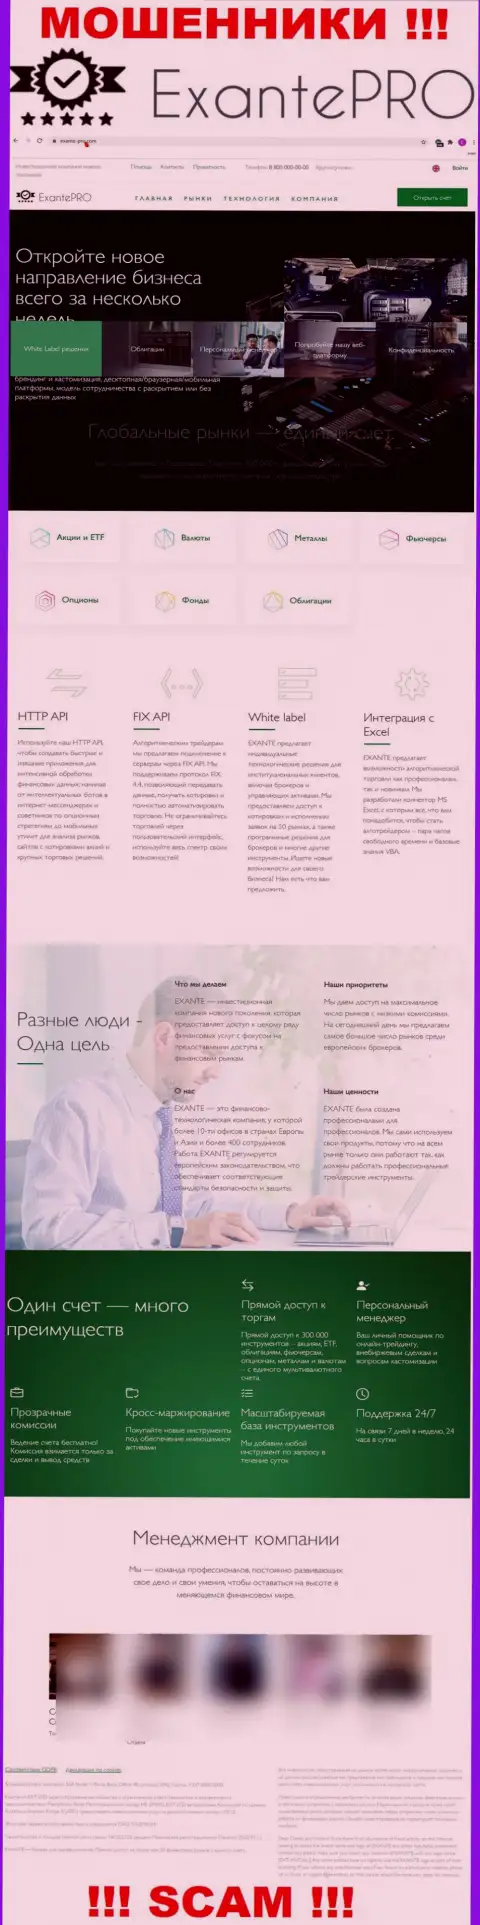 Обзор официального портала мошенников ЕКСАНТЕ Про